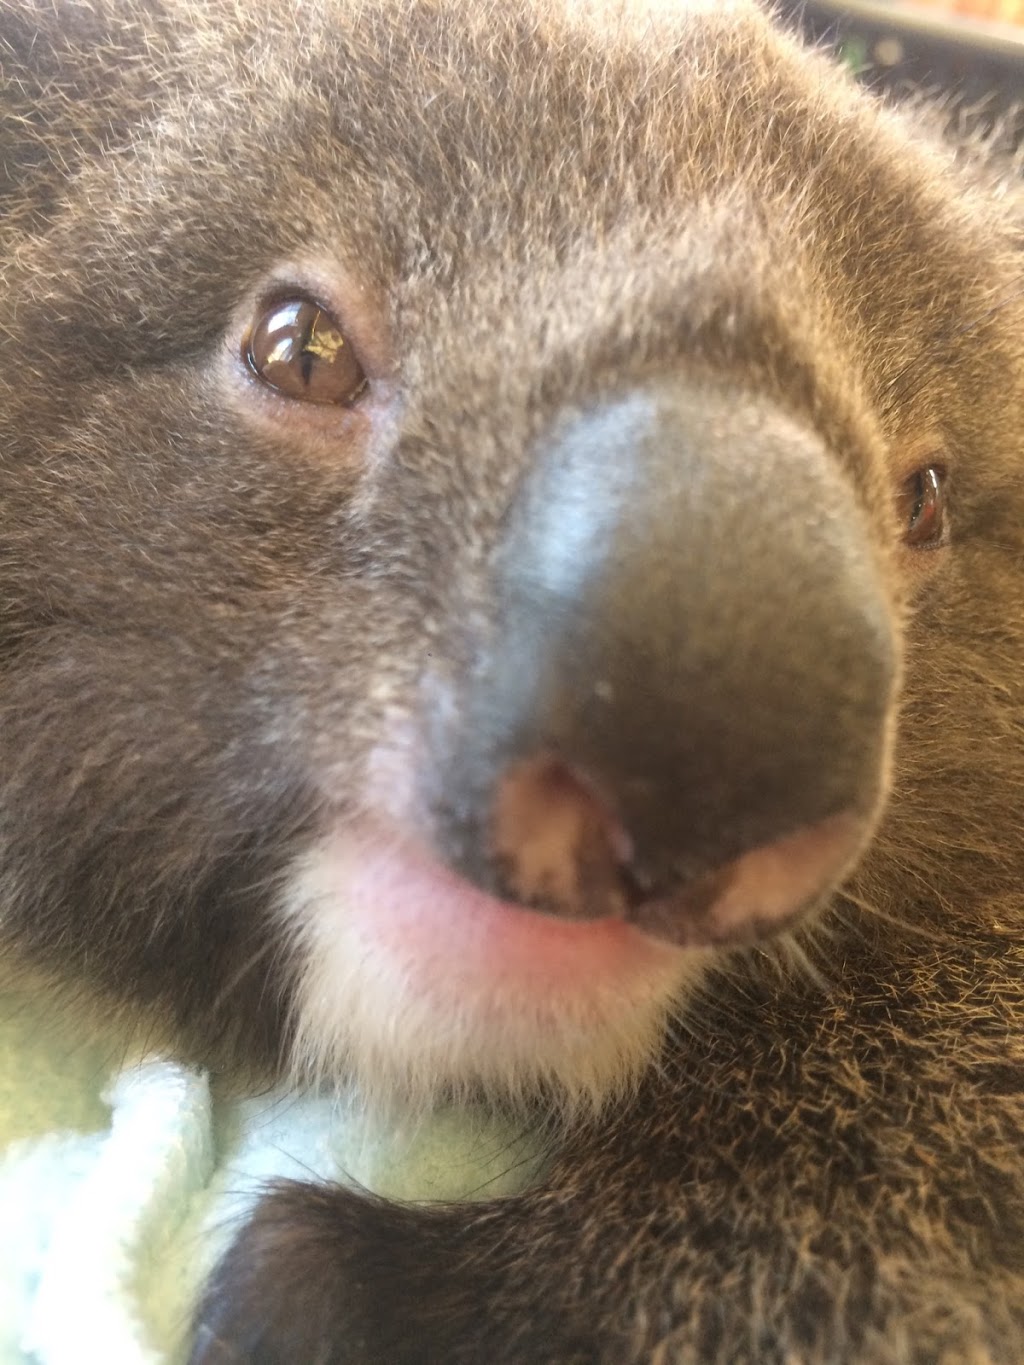 Adelaide and Hills Koala Rescue - 1300KOALAZ Inc |  | Bowen Rd, Tea Tree Gully SA 5091, Australia | 1300562529 OR +61 1300 562 529